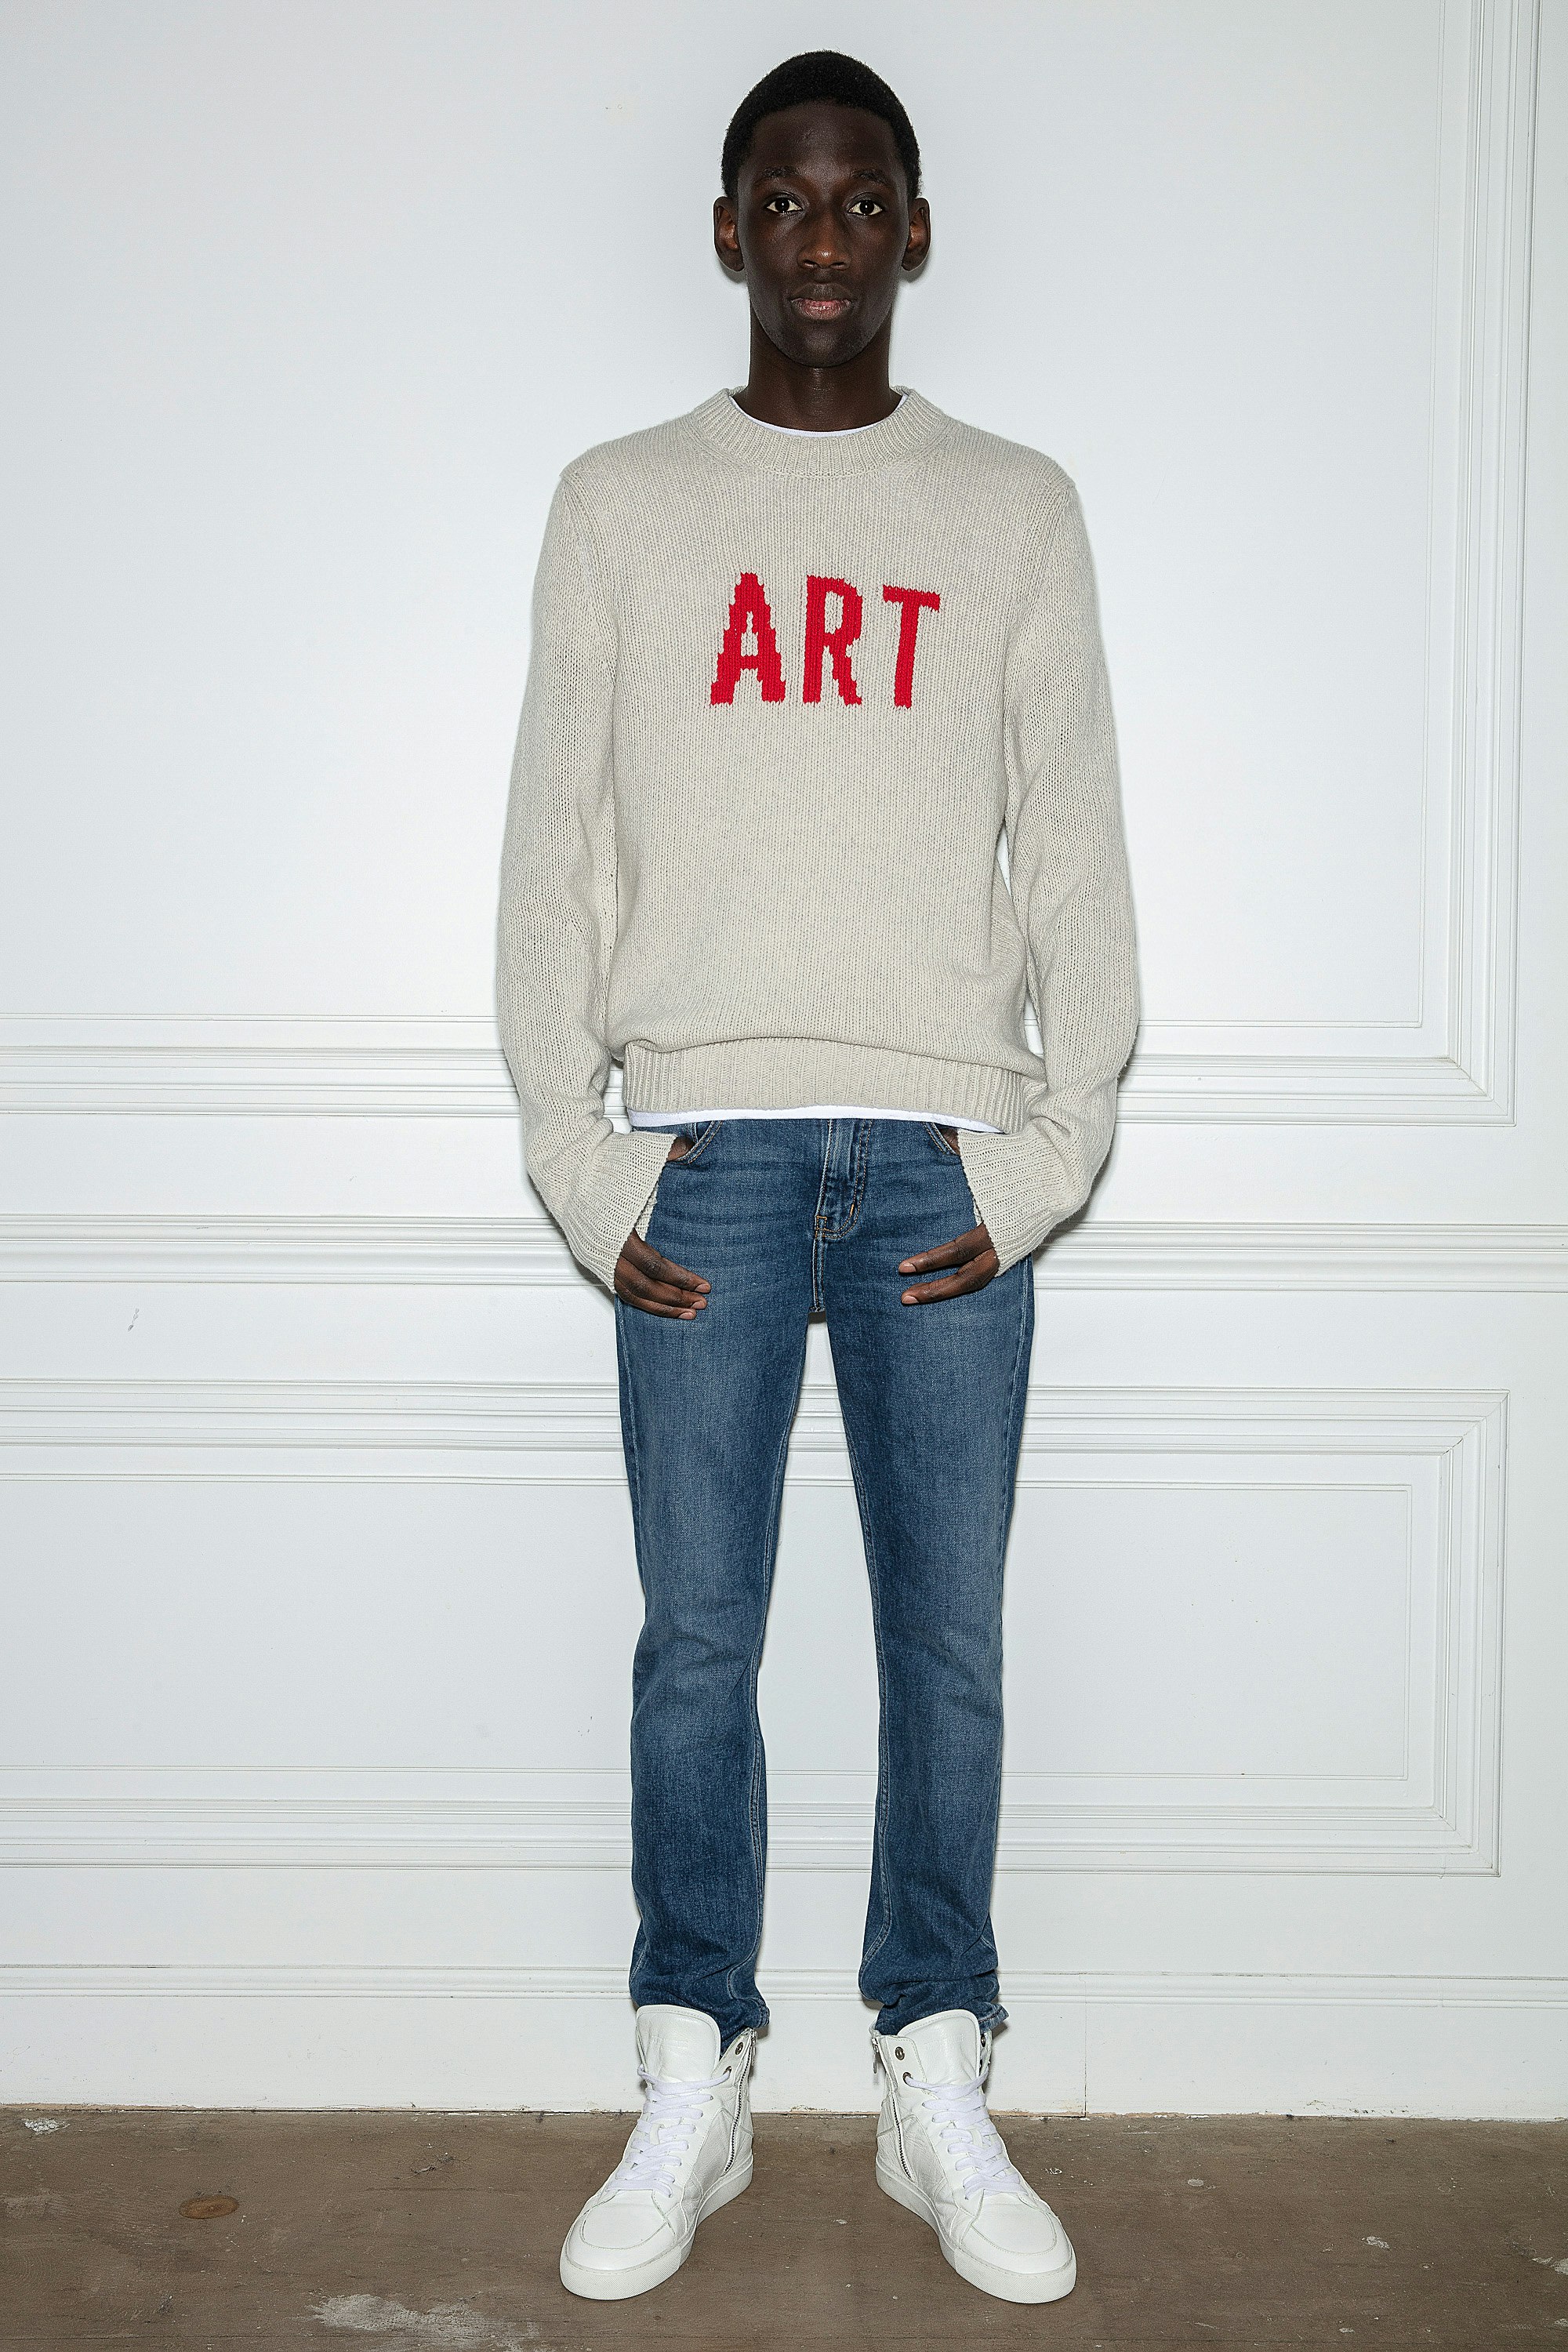 Kennedy Sweater Men’s sweater in grey merino knit with “Art” slogan